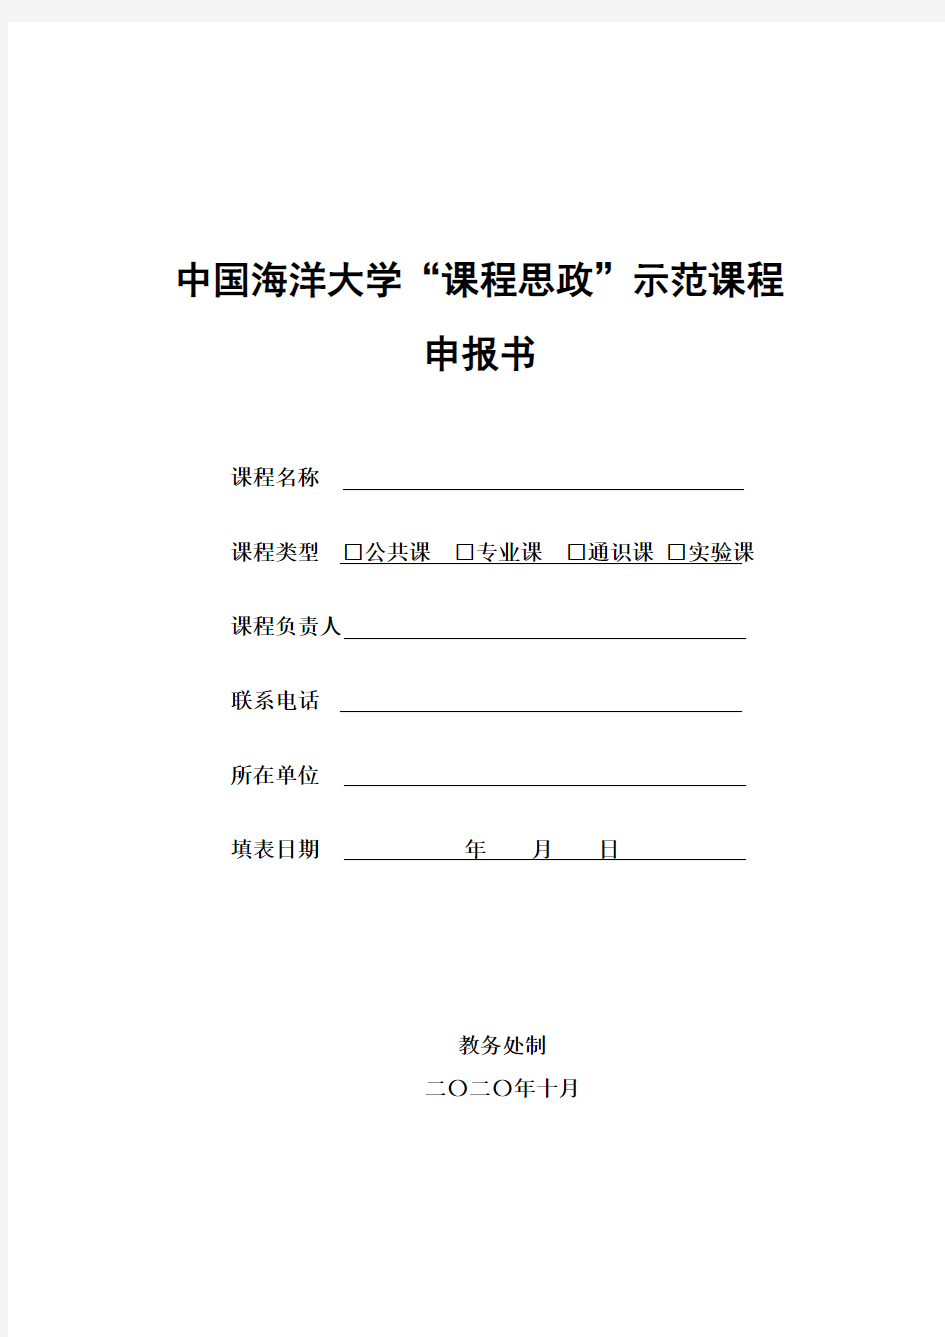 中国海洋大学“课程思政”示范课程申报书